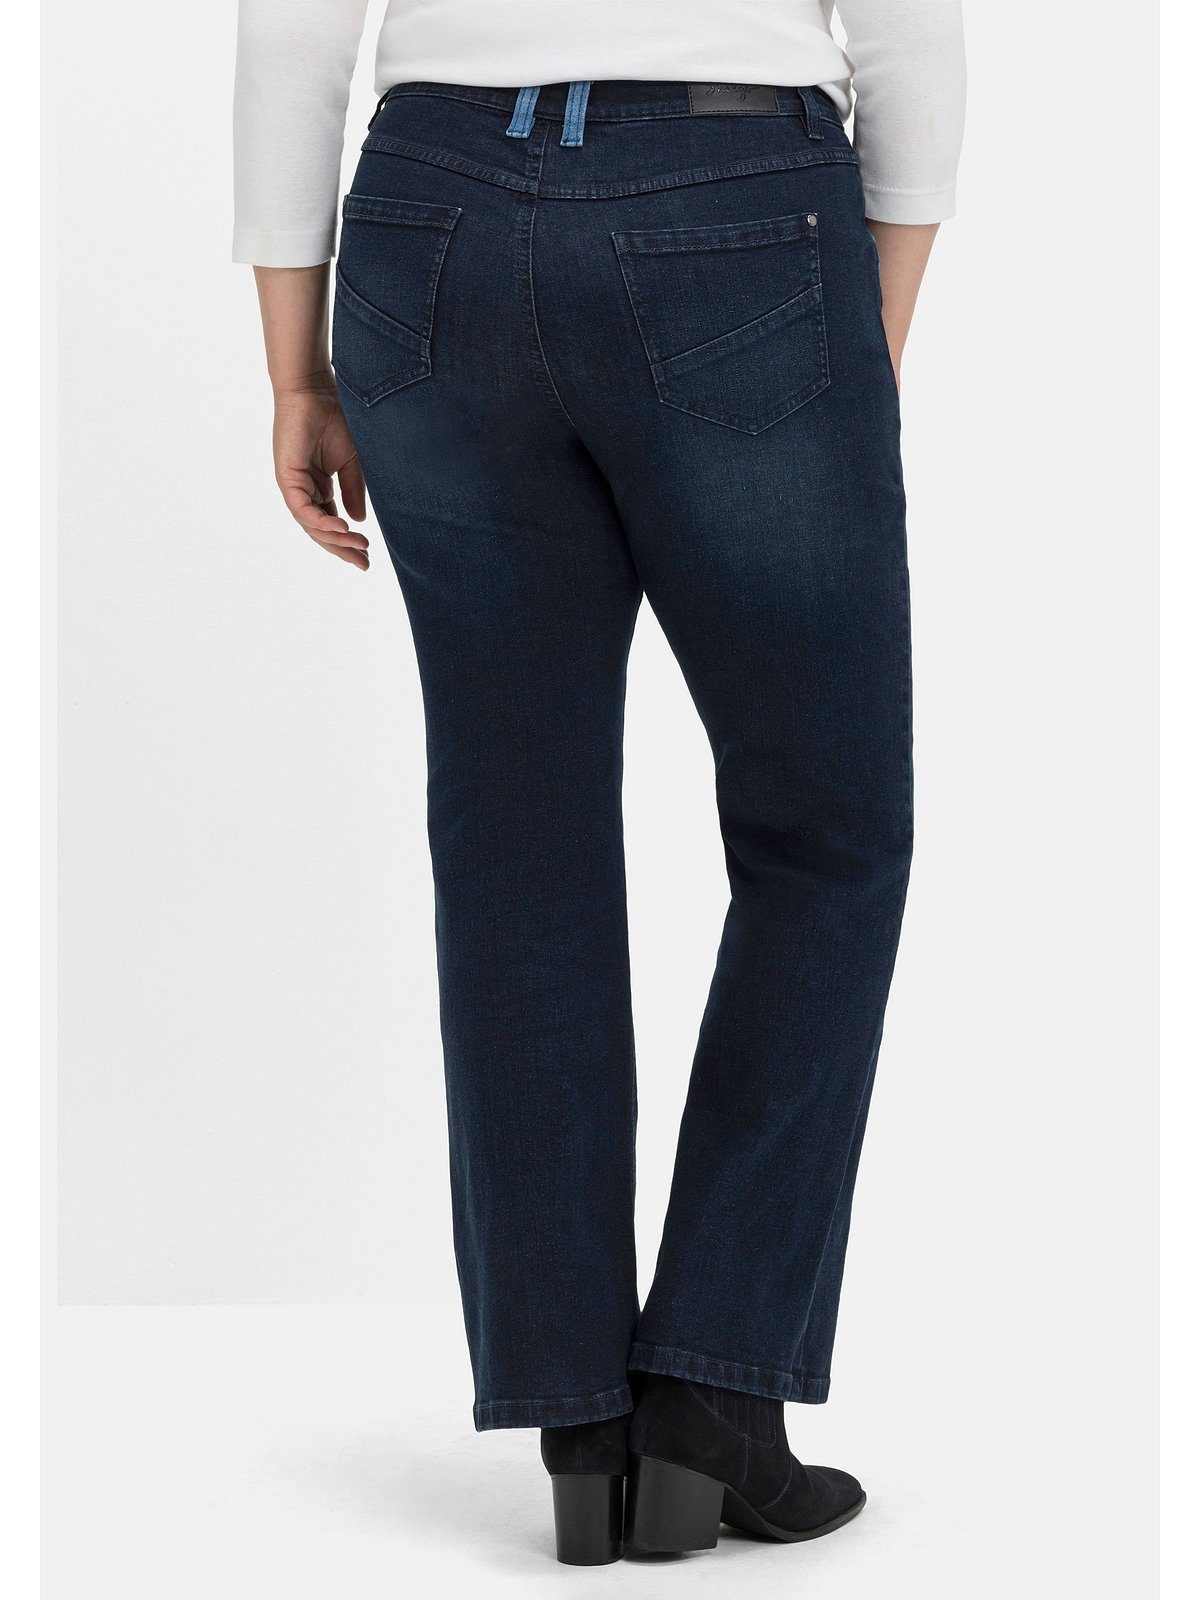 Sheego Bootcut-Jeans Große Größen mit Kontrastdetails an Bein und Tasche